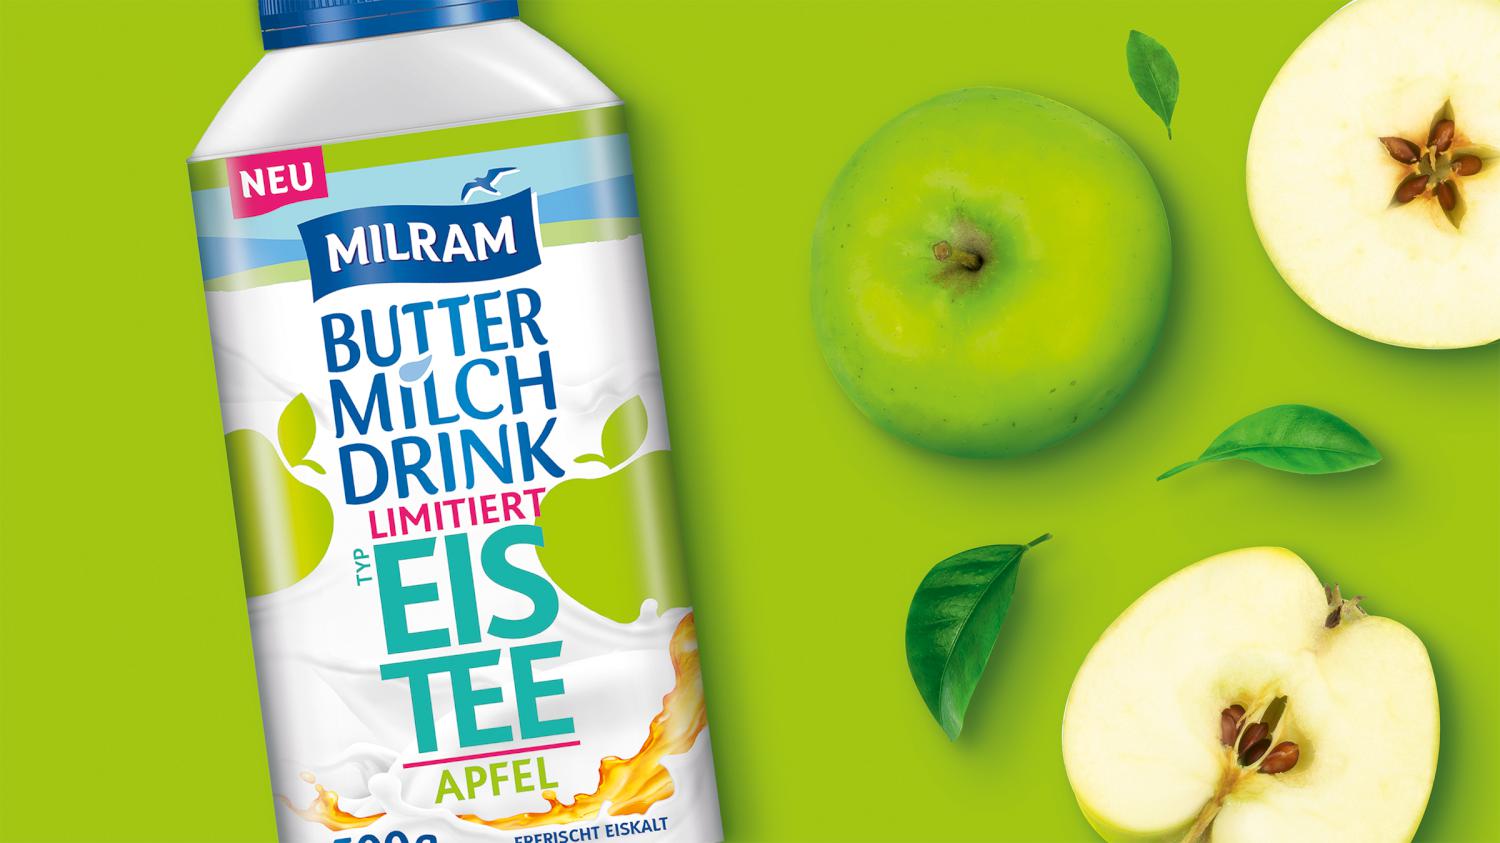 Milram Buttermilch Drink Launch Grafikdesign Branding-Strategie Verpackungsdesign Logodesign Line Extension